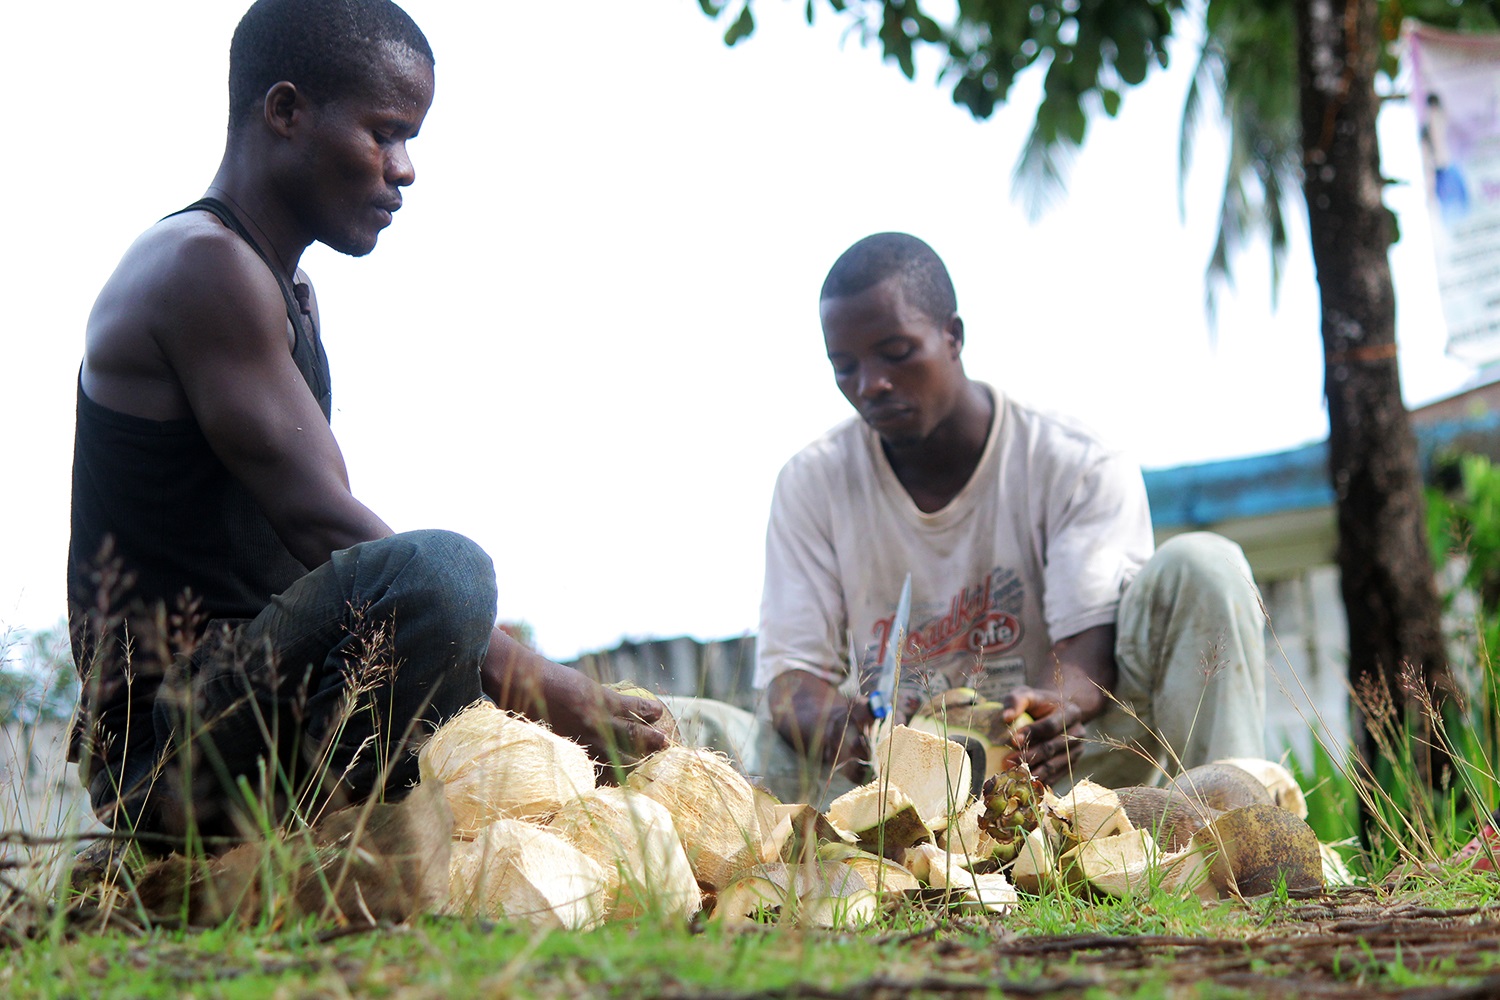 Making-coconut-oil-Liberia2